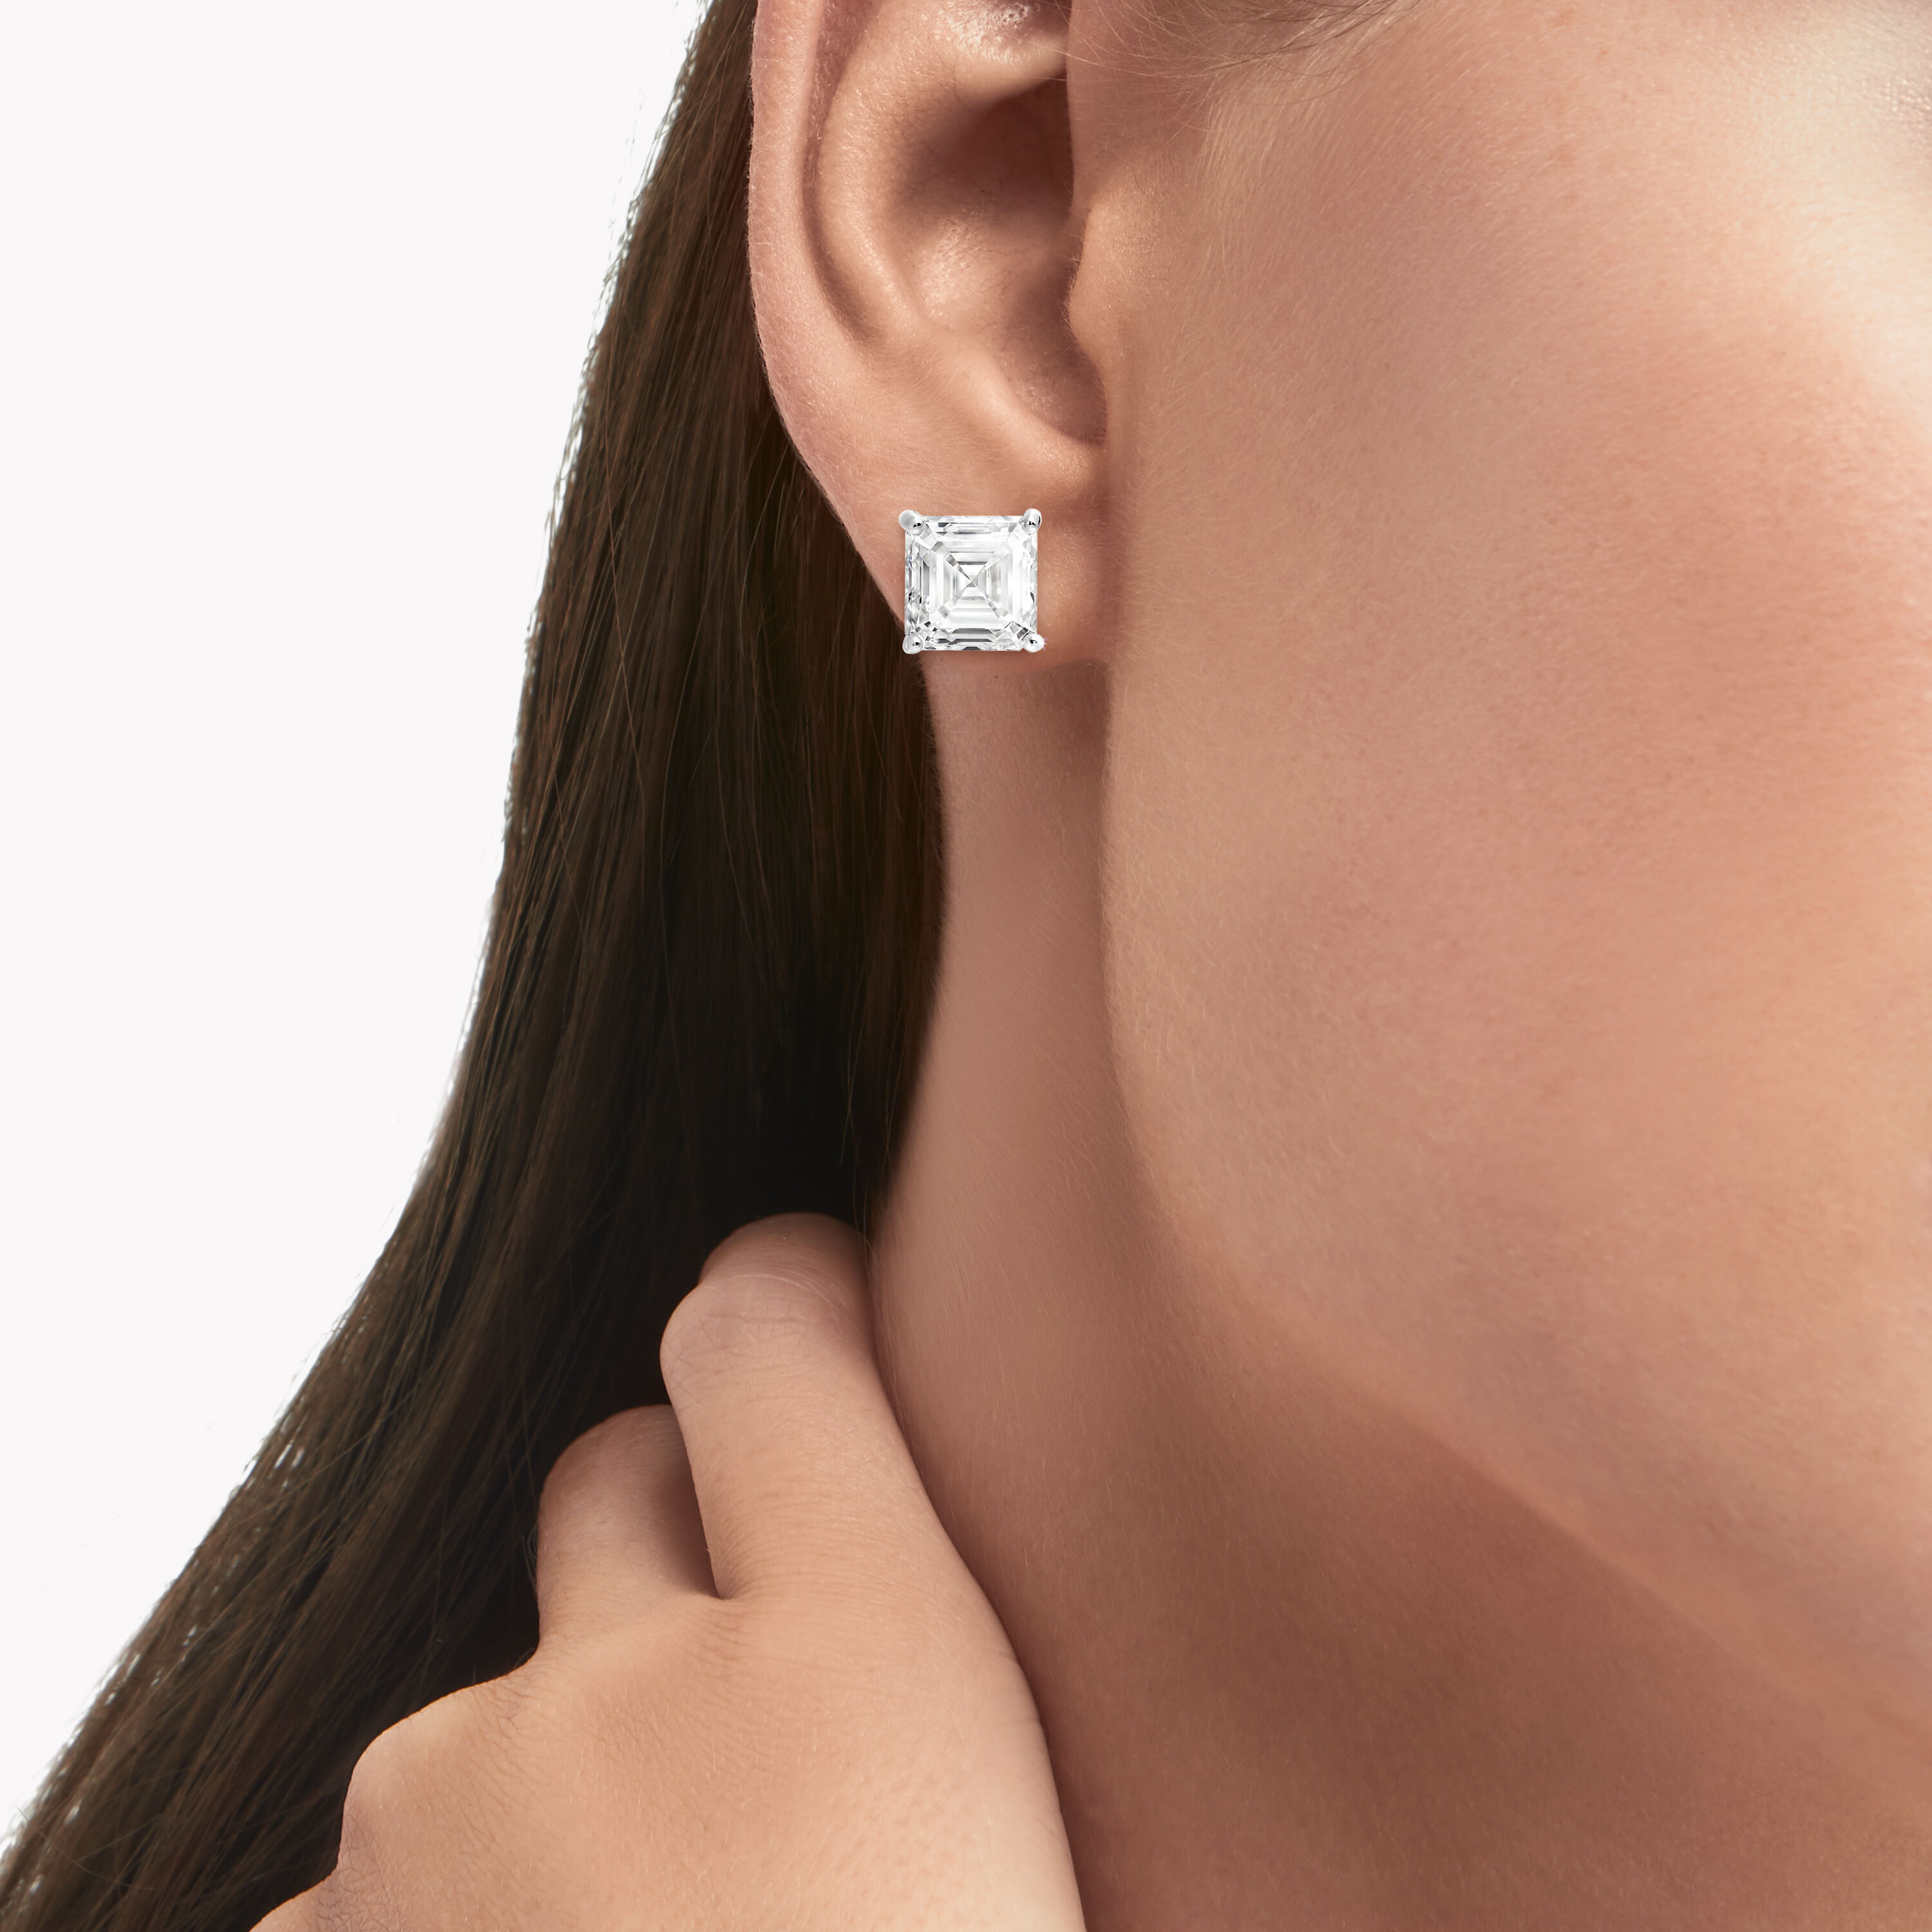 Peora Earrings  Buy Peora American Diamond Cut Stud Earrings for Women  Silver CZ Ear TopsPF3E135S OnlineNykaa Fashion